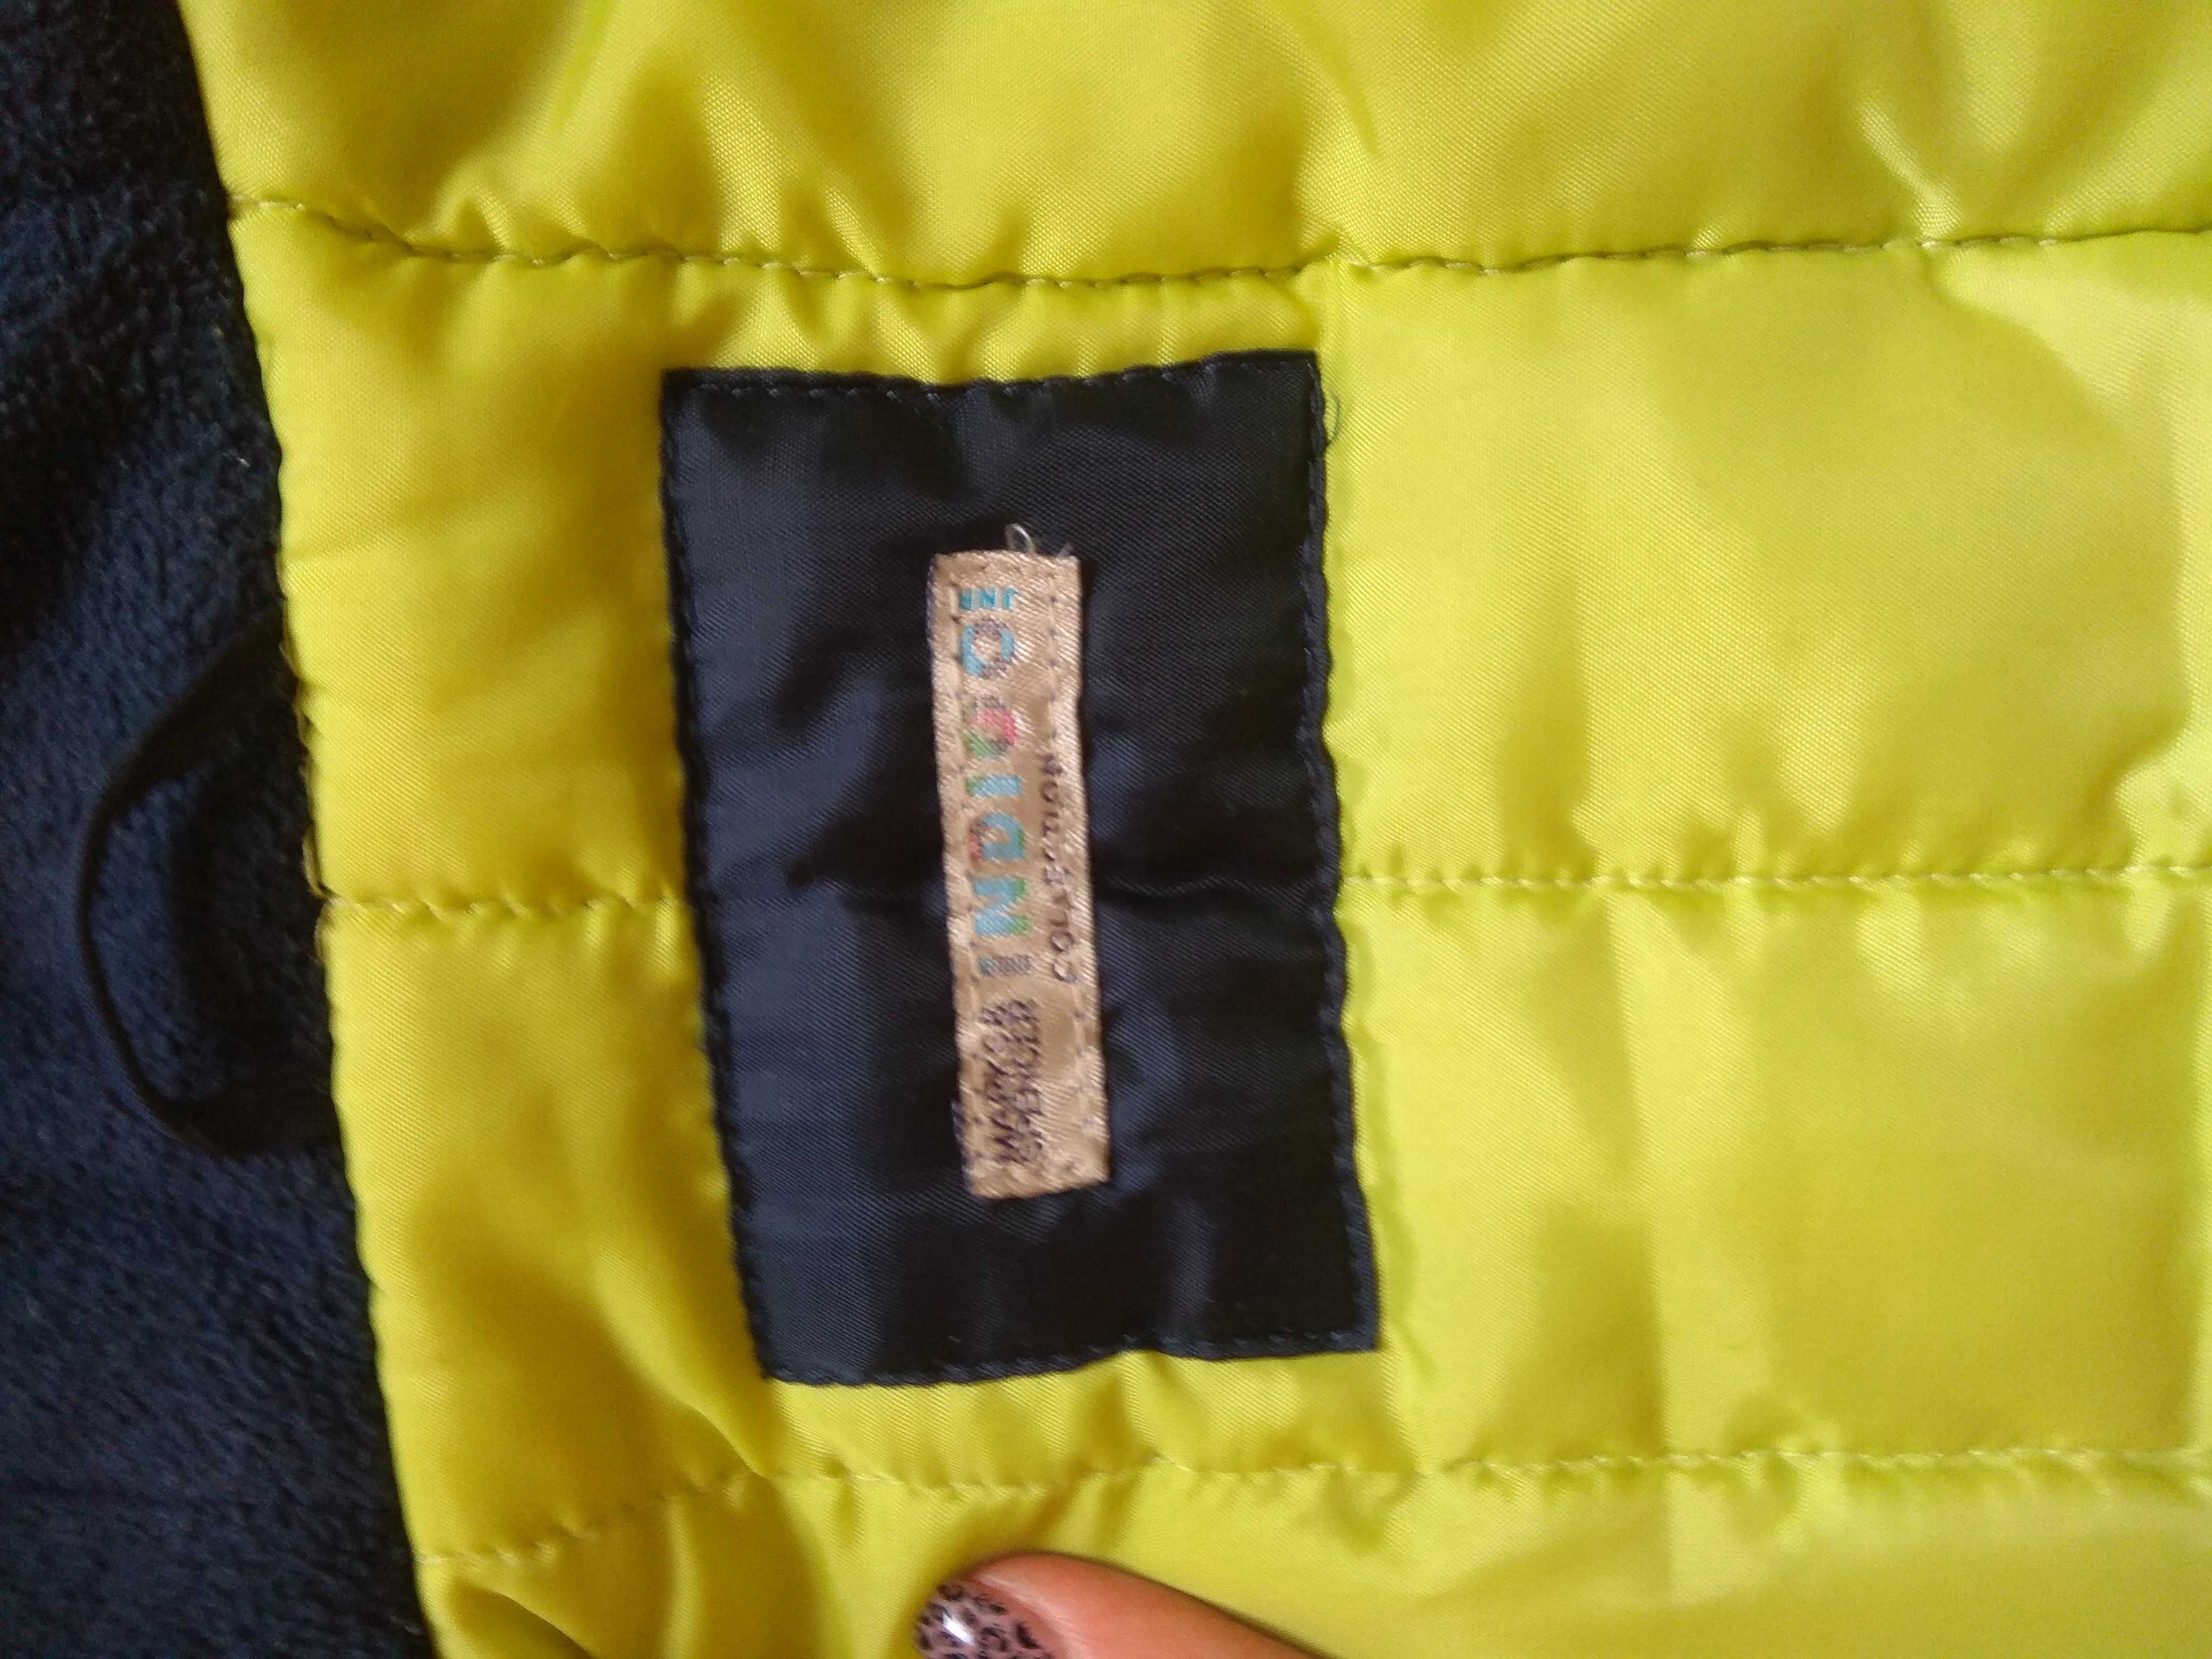 Курточка демисезонная синяя + жилетка осенняя тёплая р 92-98 2-3 г M&S